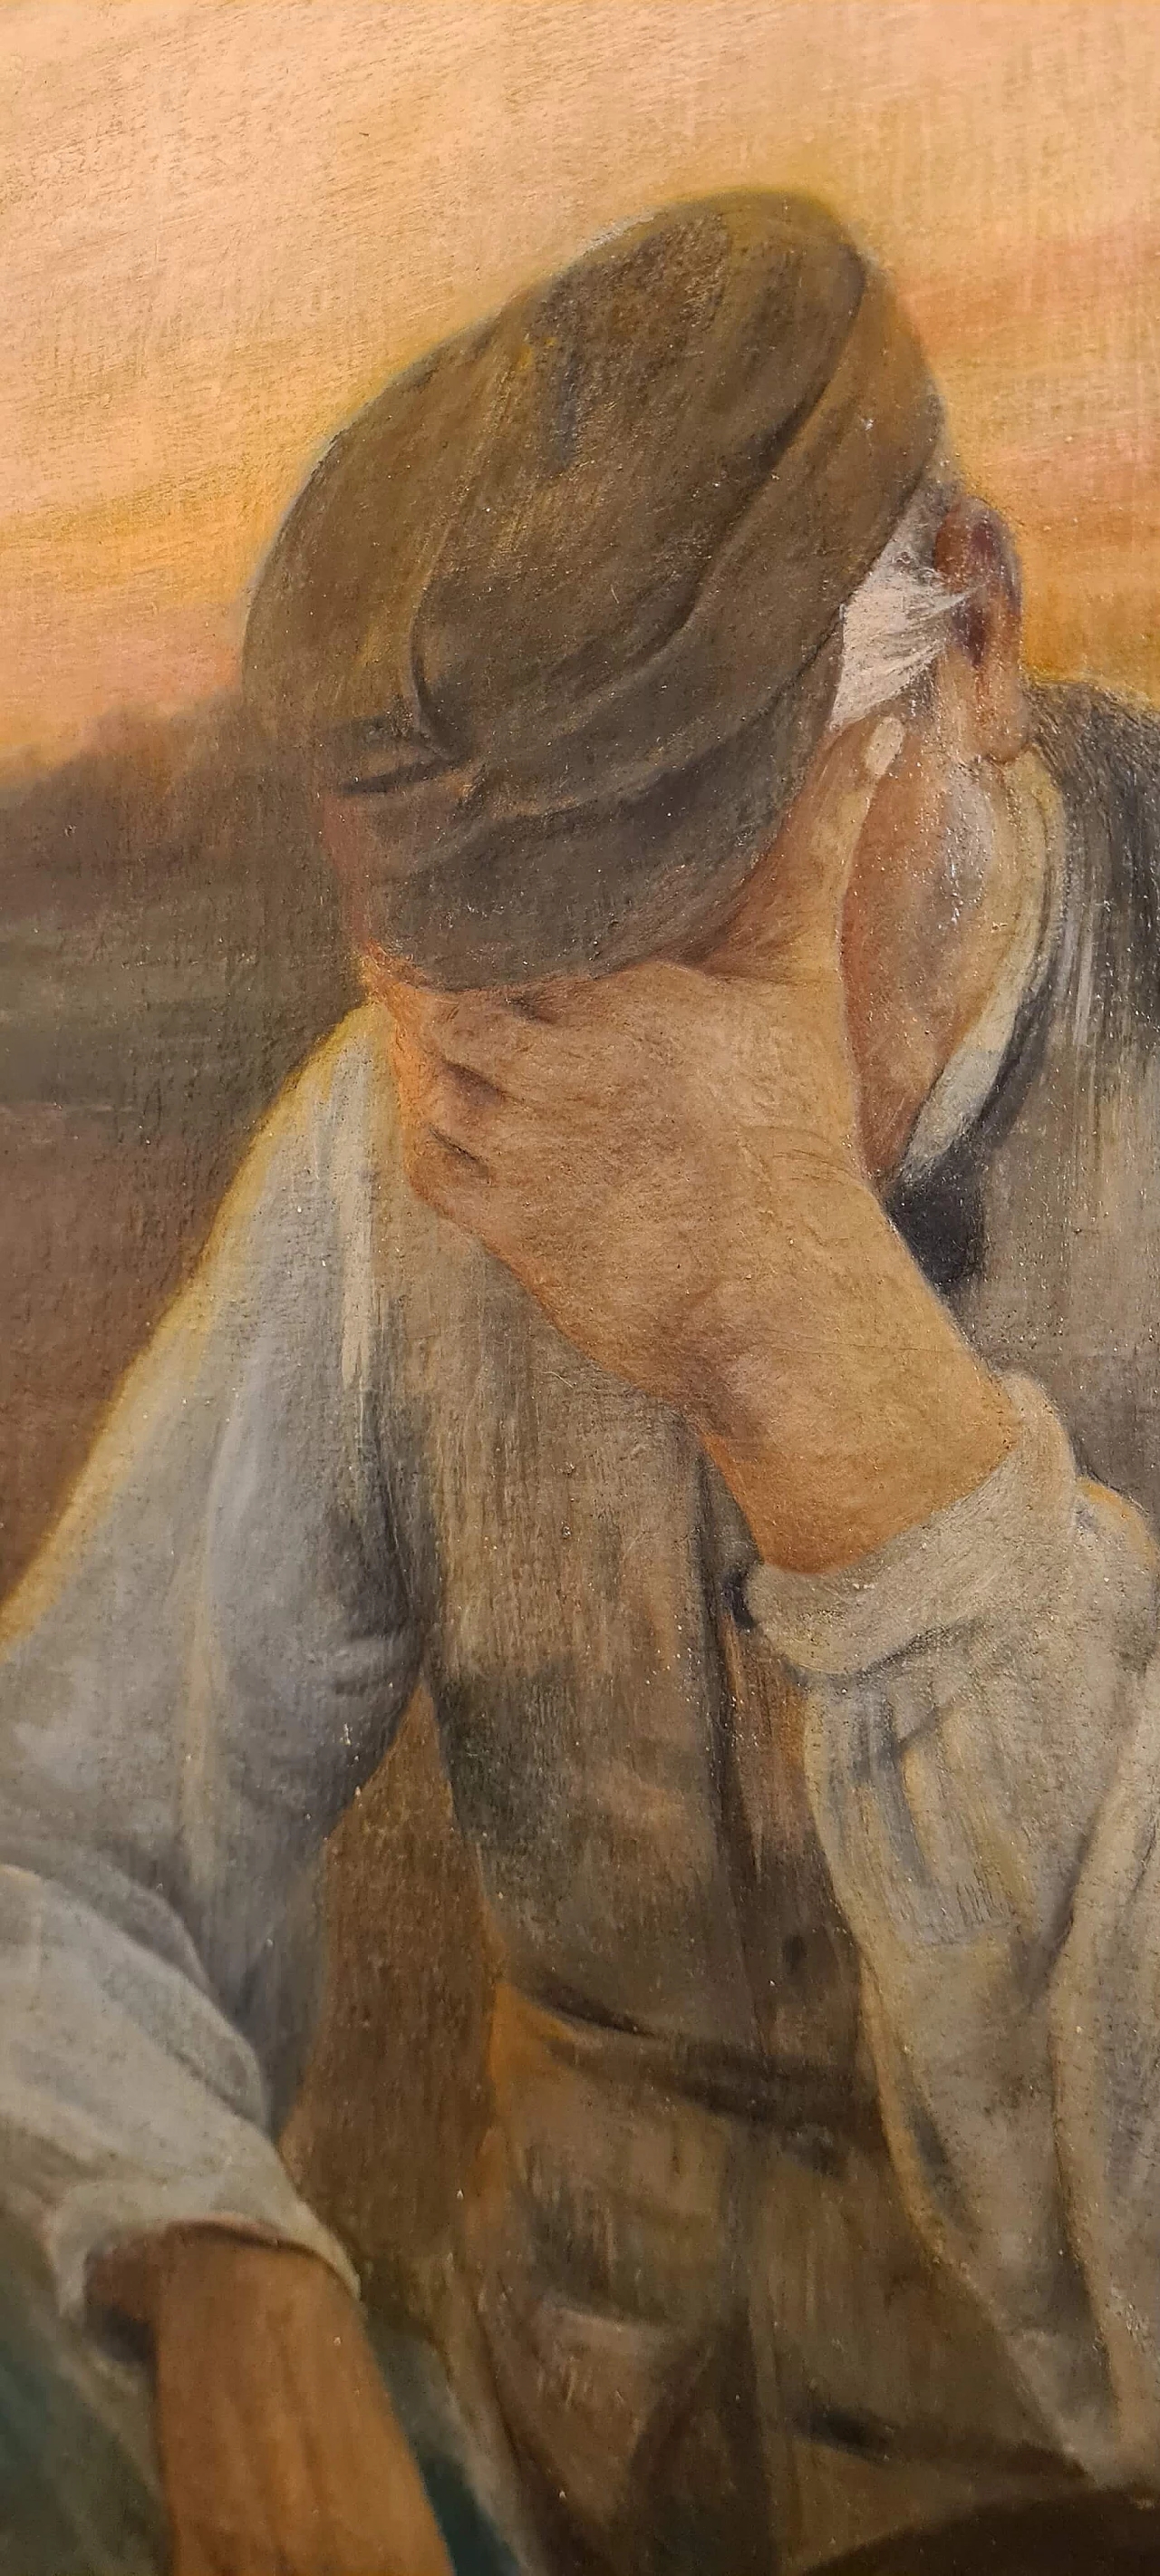 Albert Bettanier, La Depart, oil on canvas, 1888 3